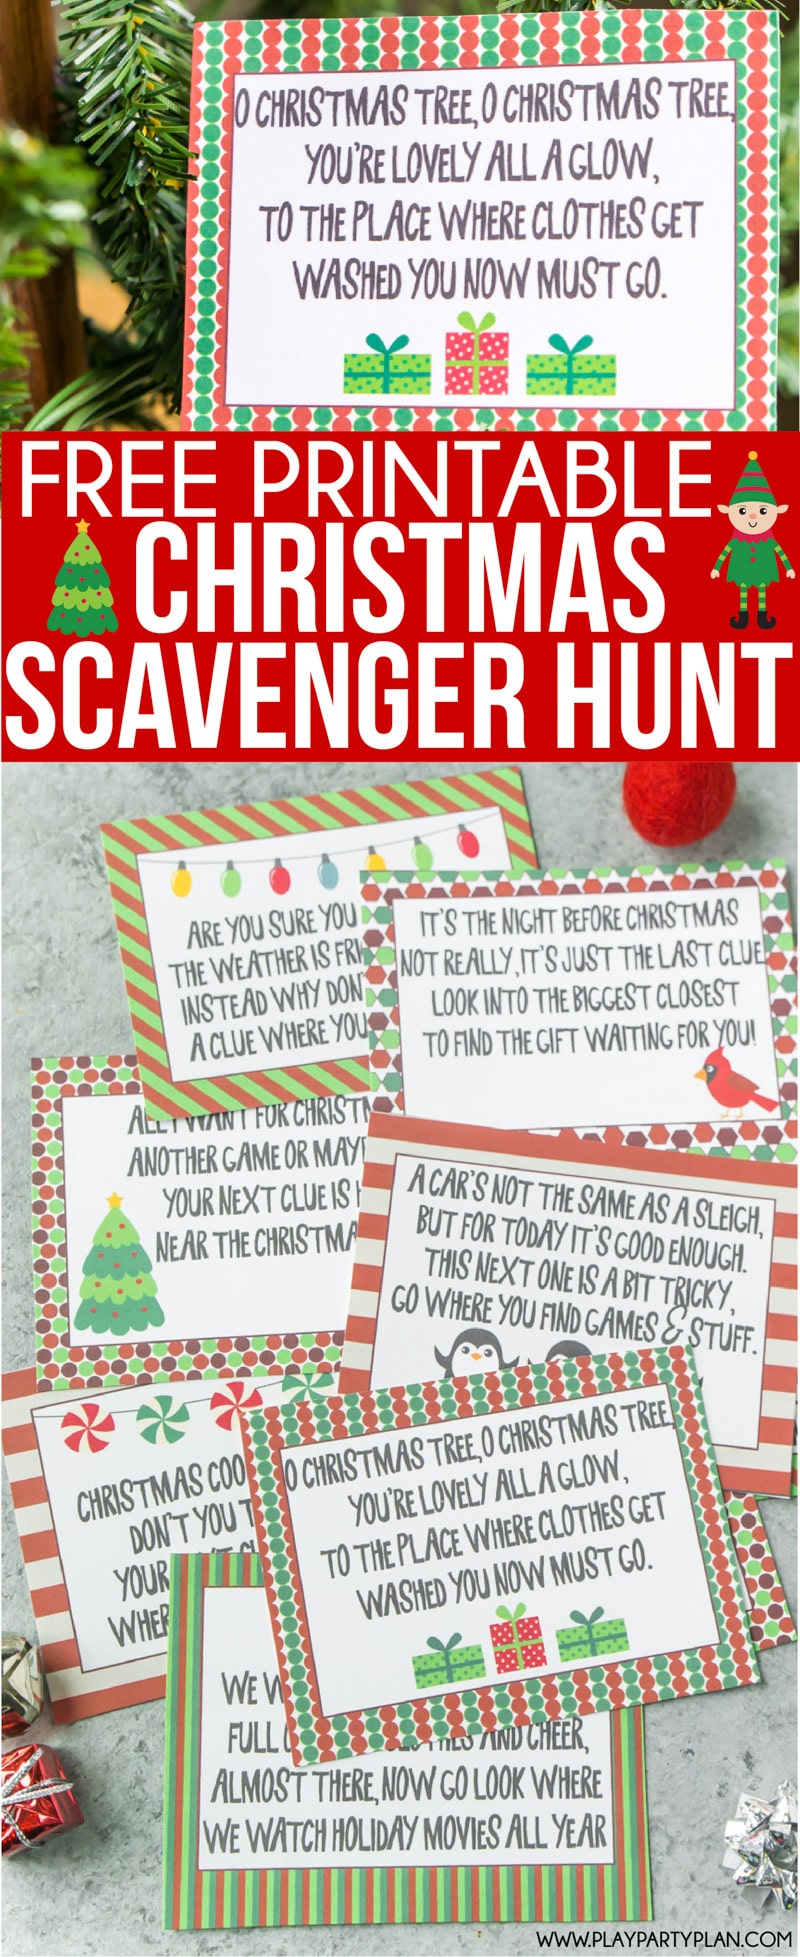 Christmas Scavenger Hunt Ideas For Kids